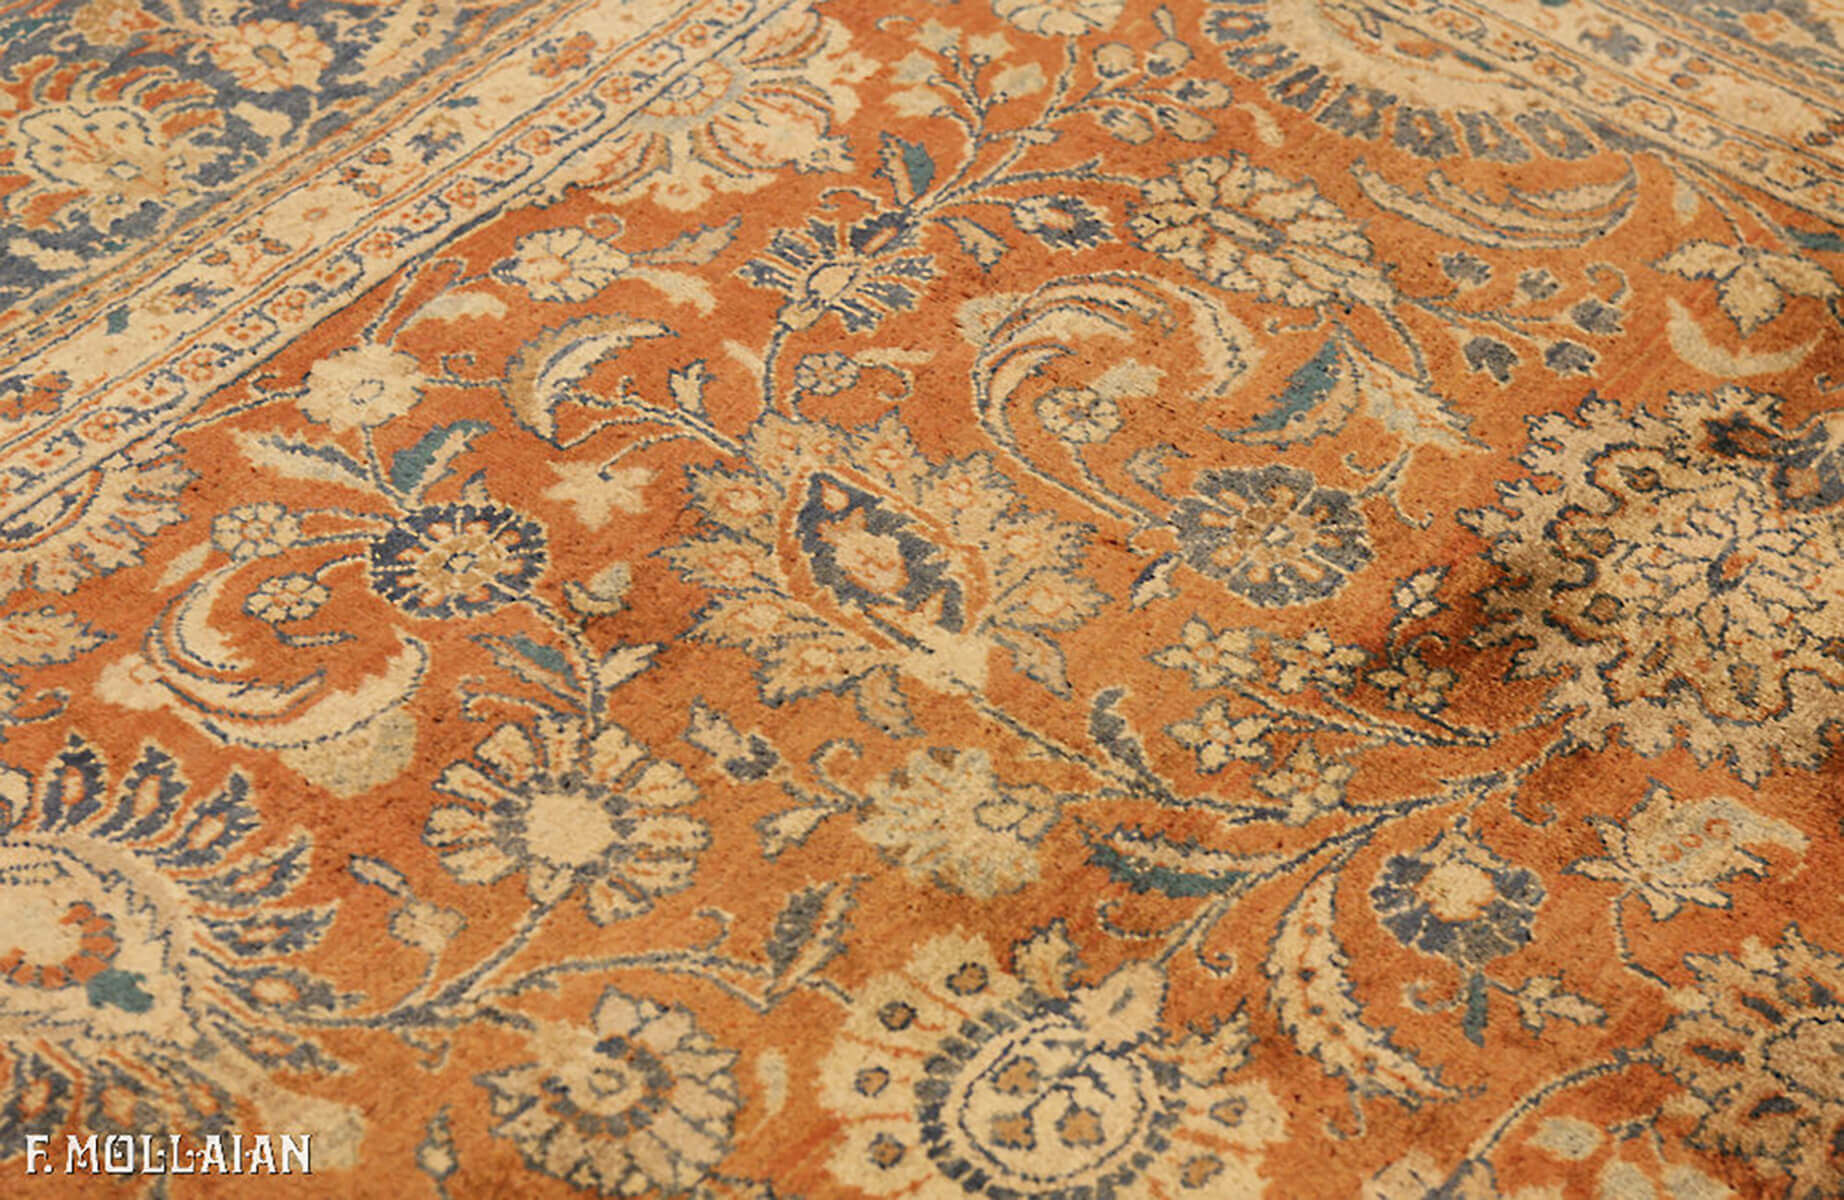 Teppich Persischer Semi-Antiker Saruk n°:33000812